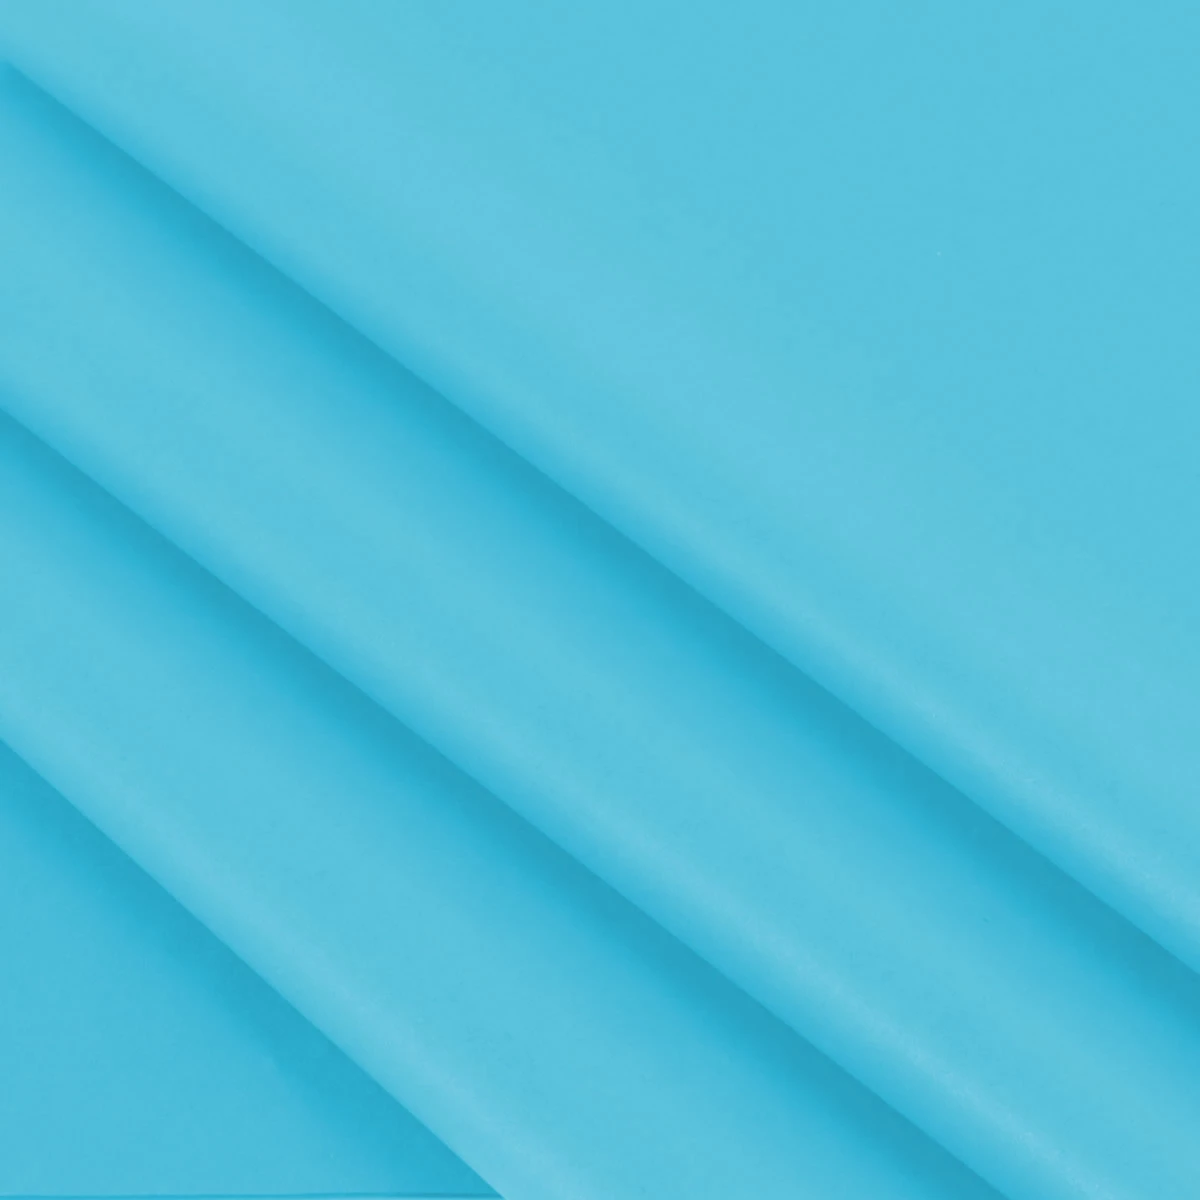 Vloeipapier turquoise 50 x 70 cm (480 vellen)